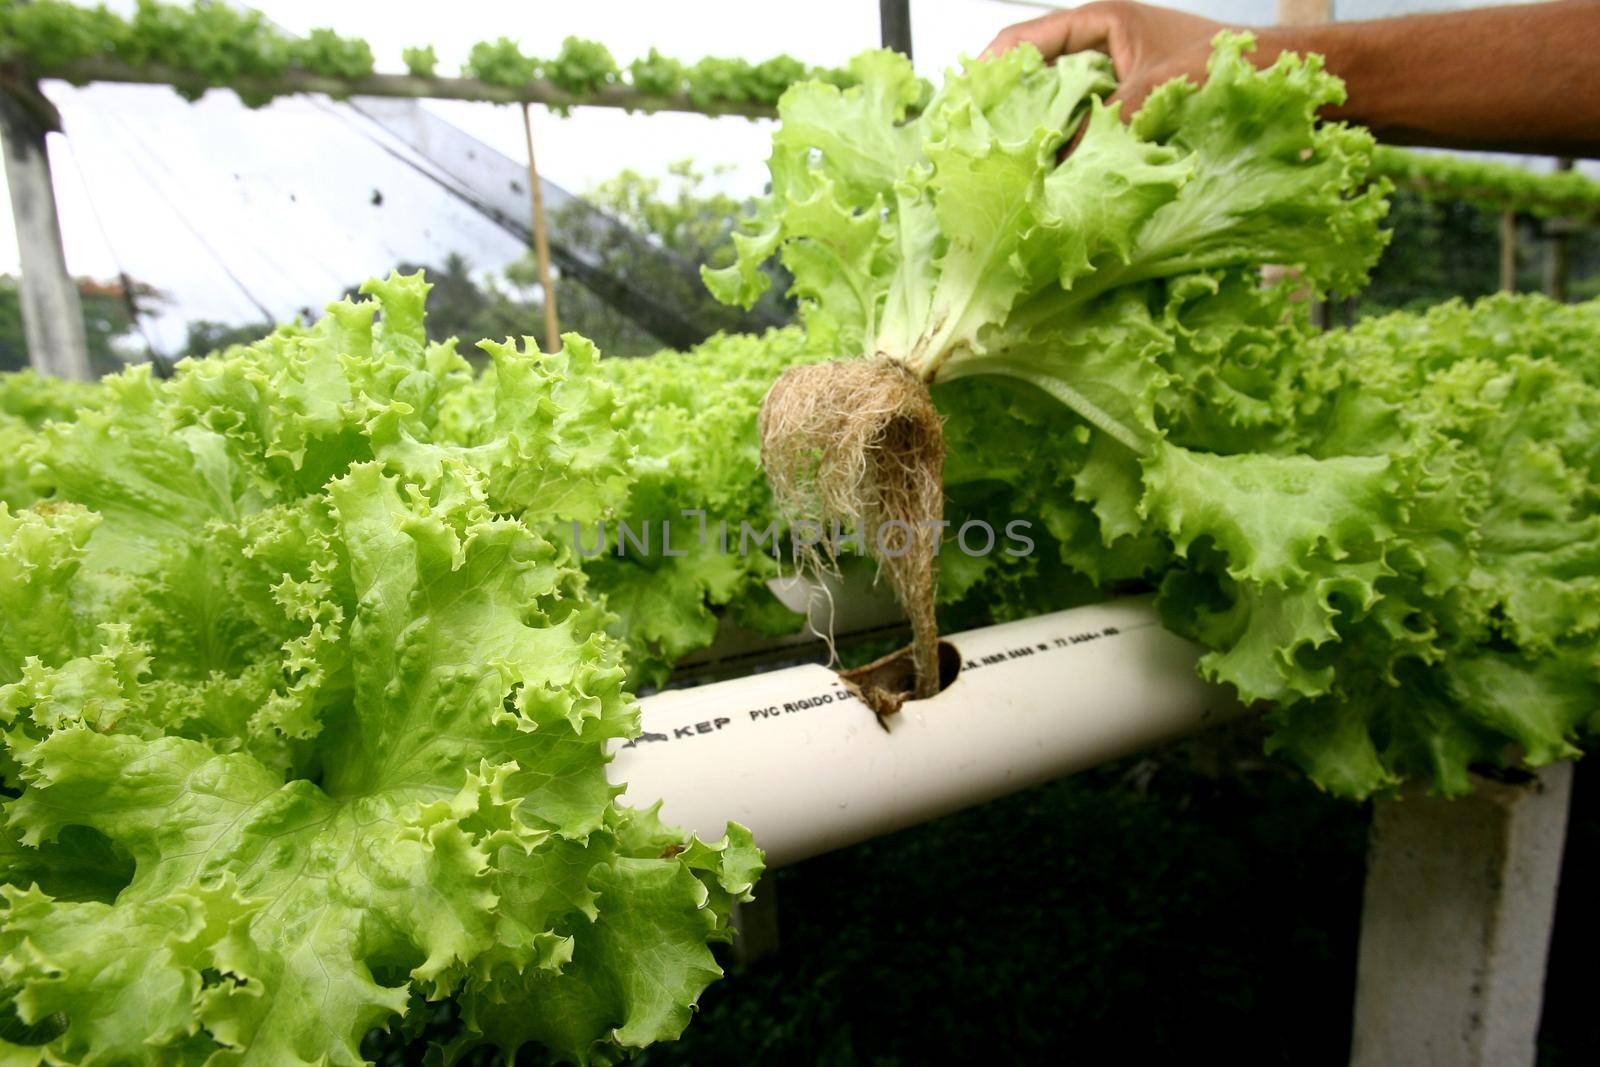  hydroponic lettuce in organic garden by joasouza